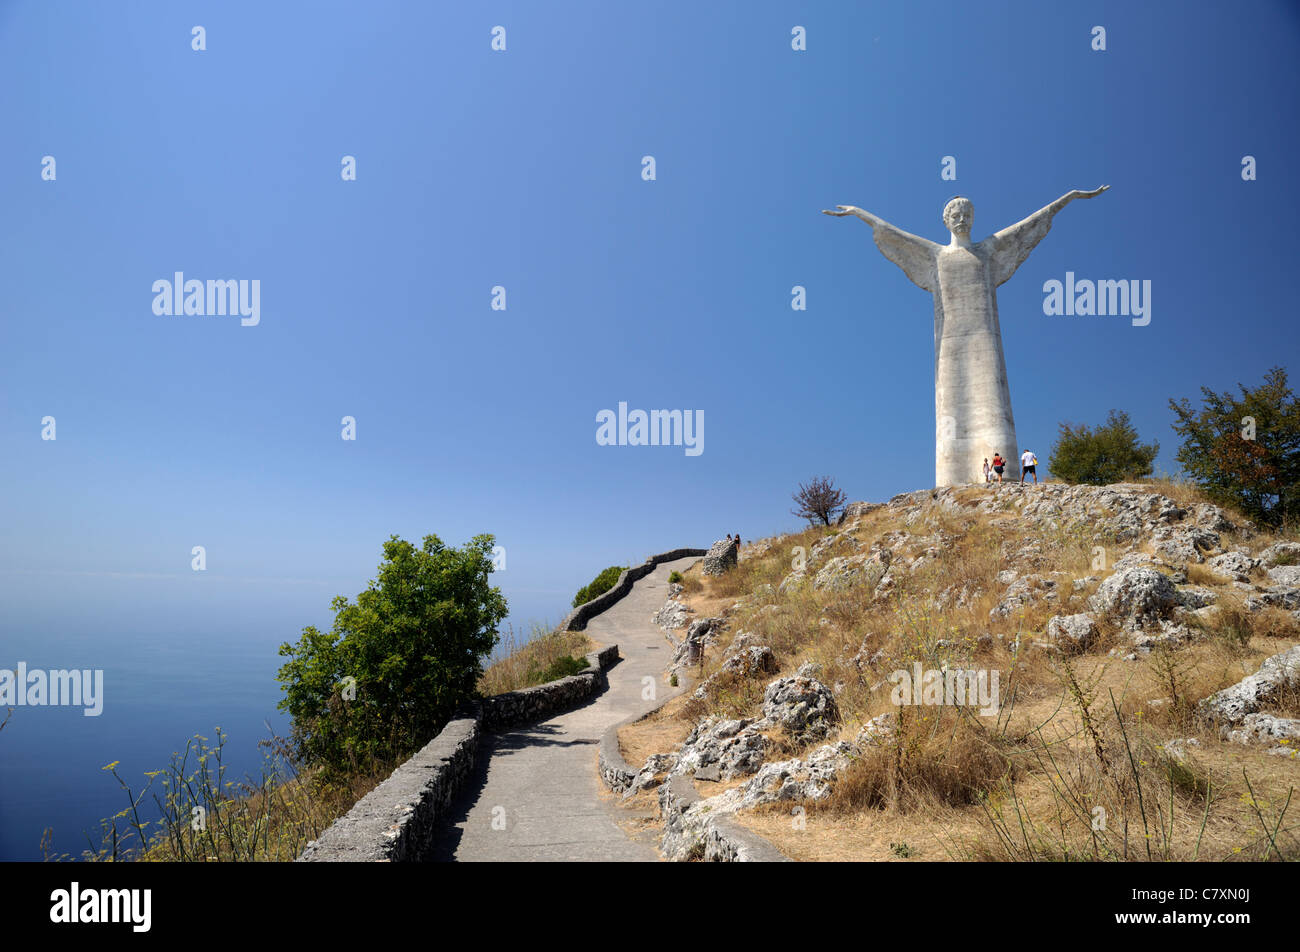 Monte san biagio immagini e fotografie stock ad alta risoluzione - Alamy